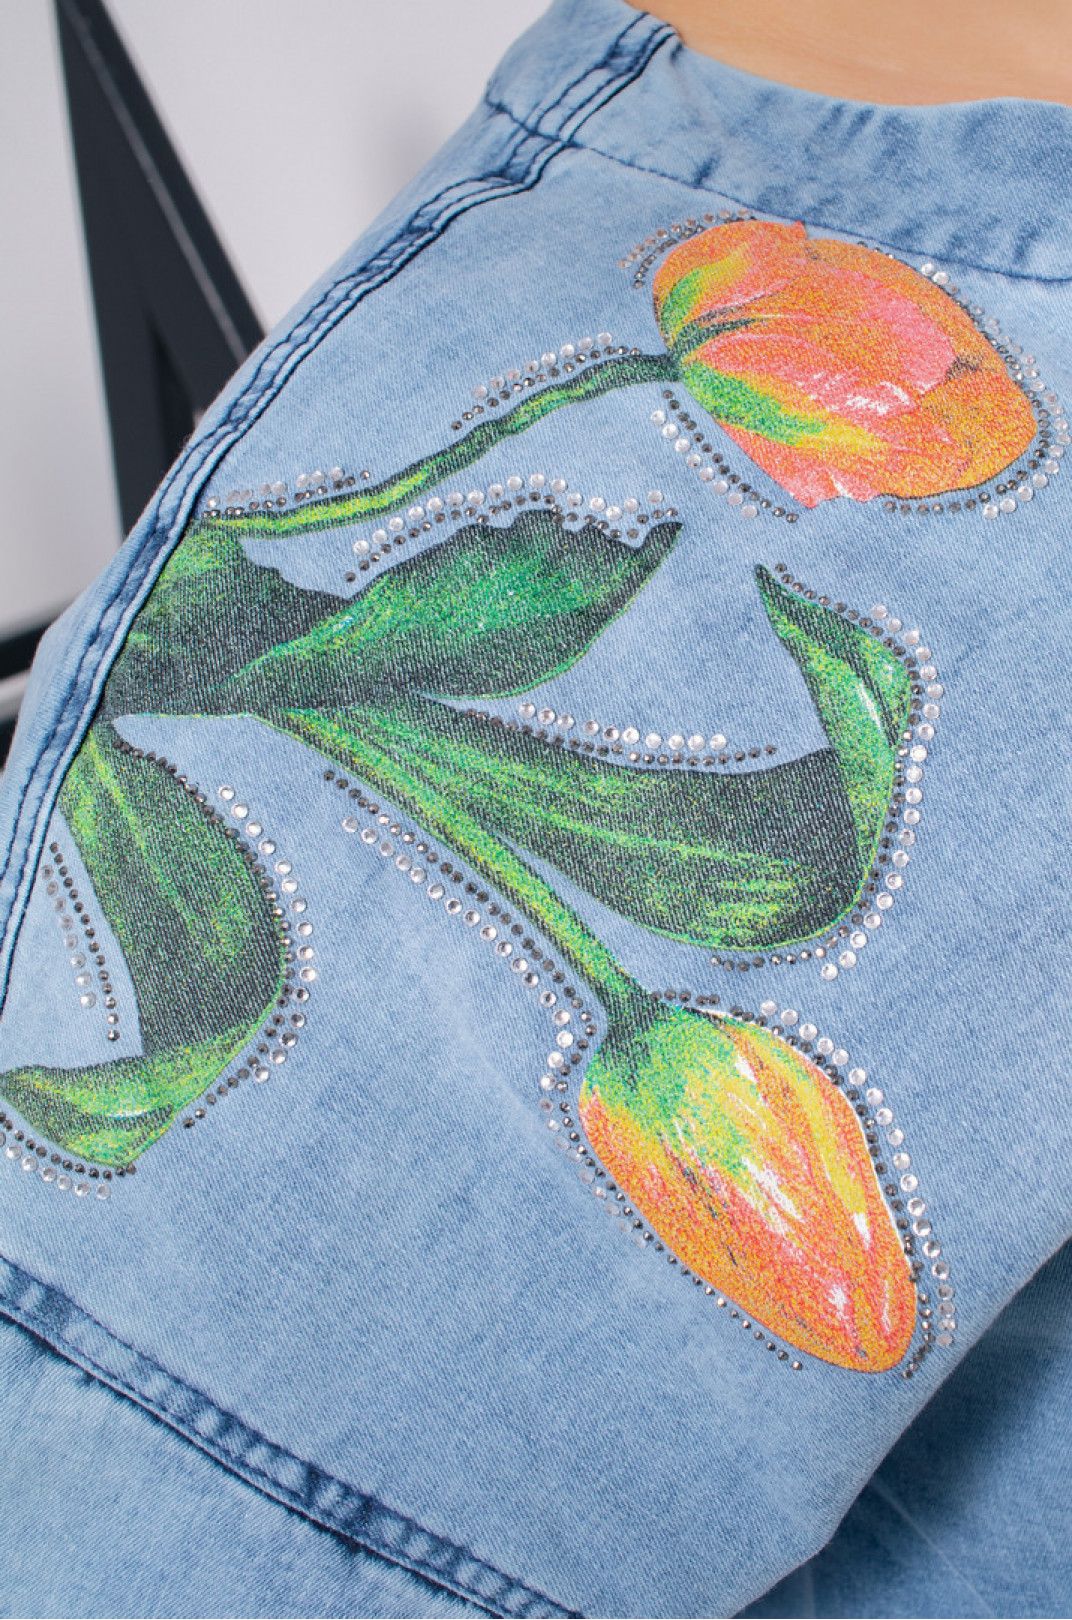 Куртка джинсова з принтом квіти супер батал